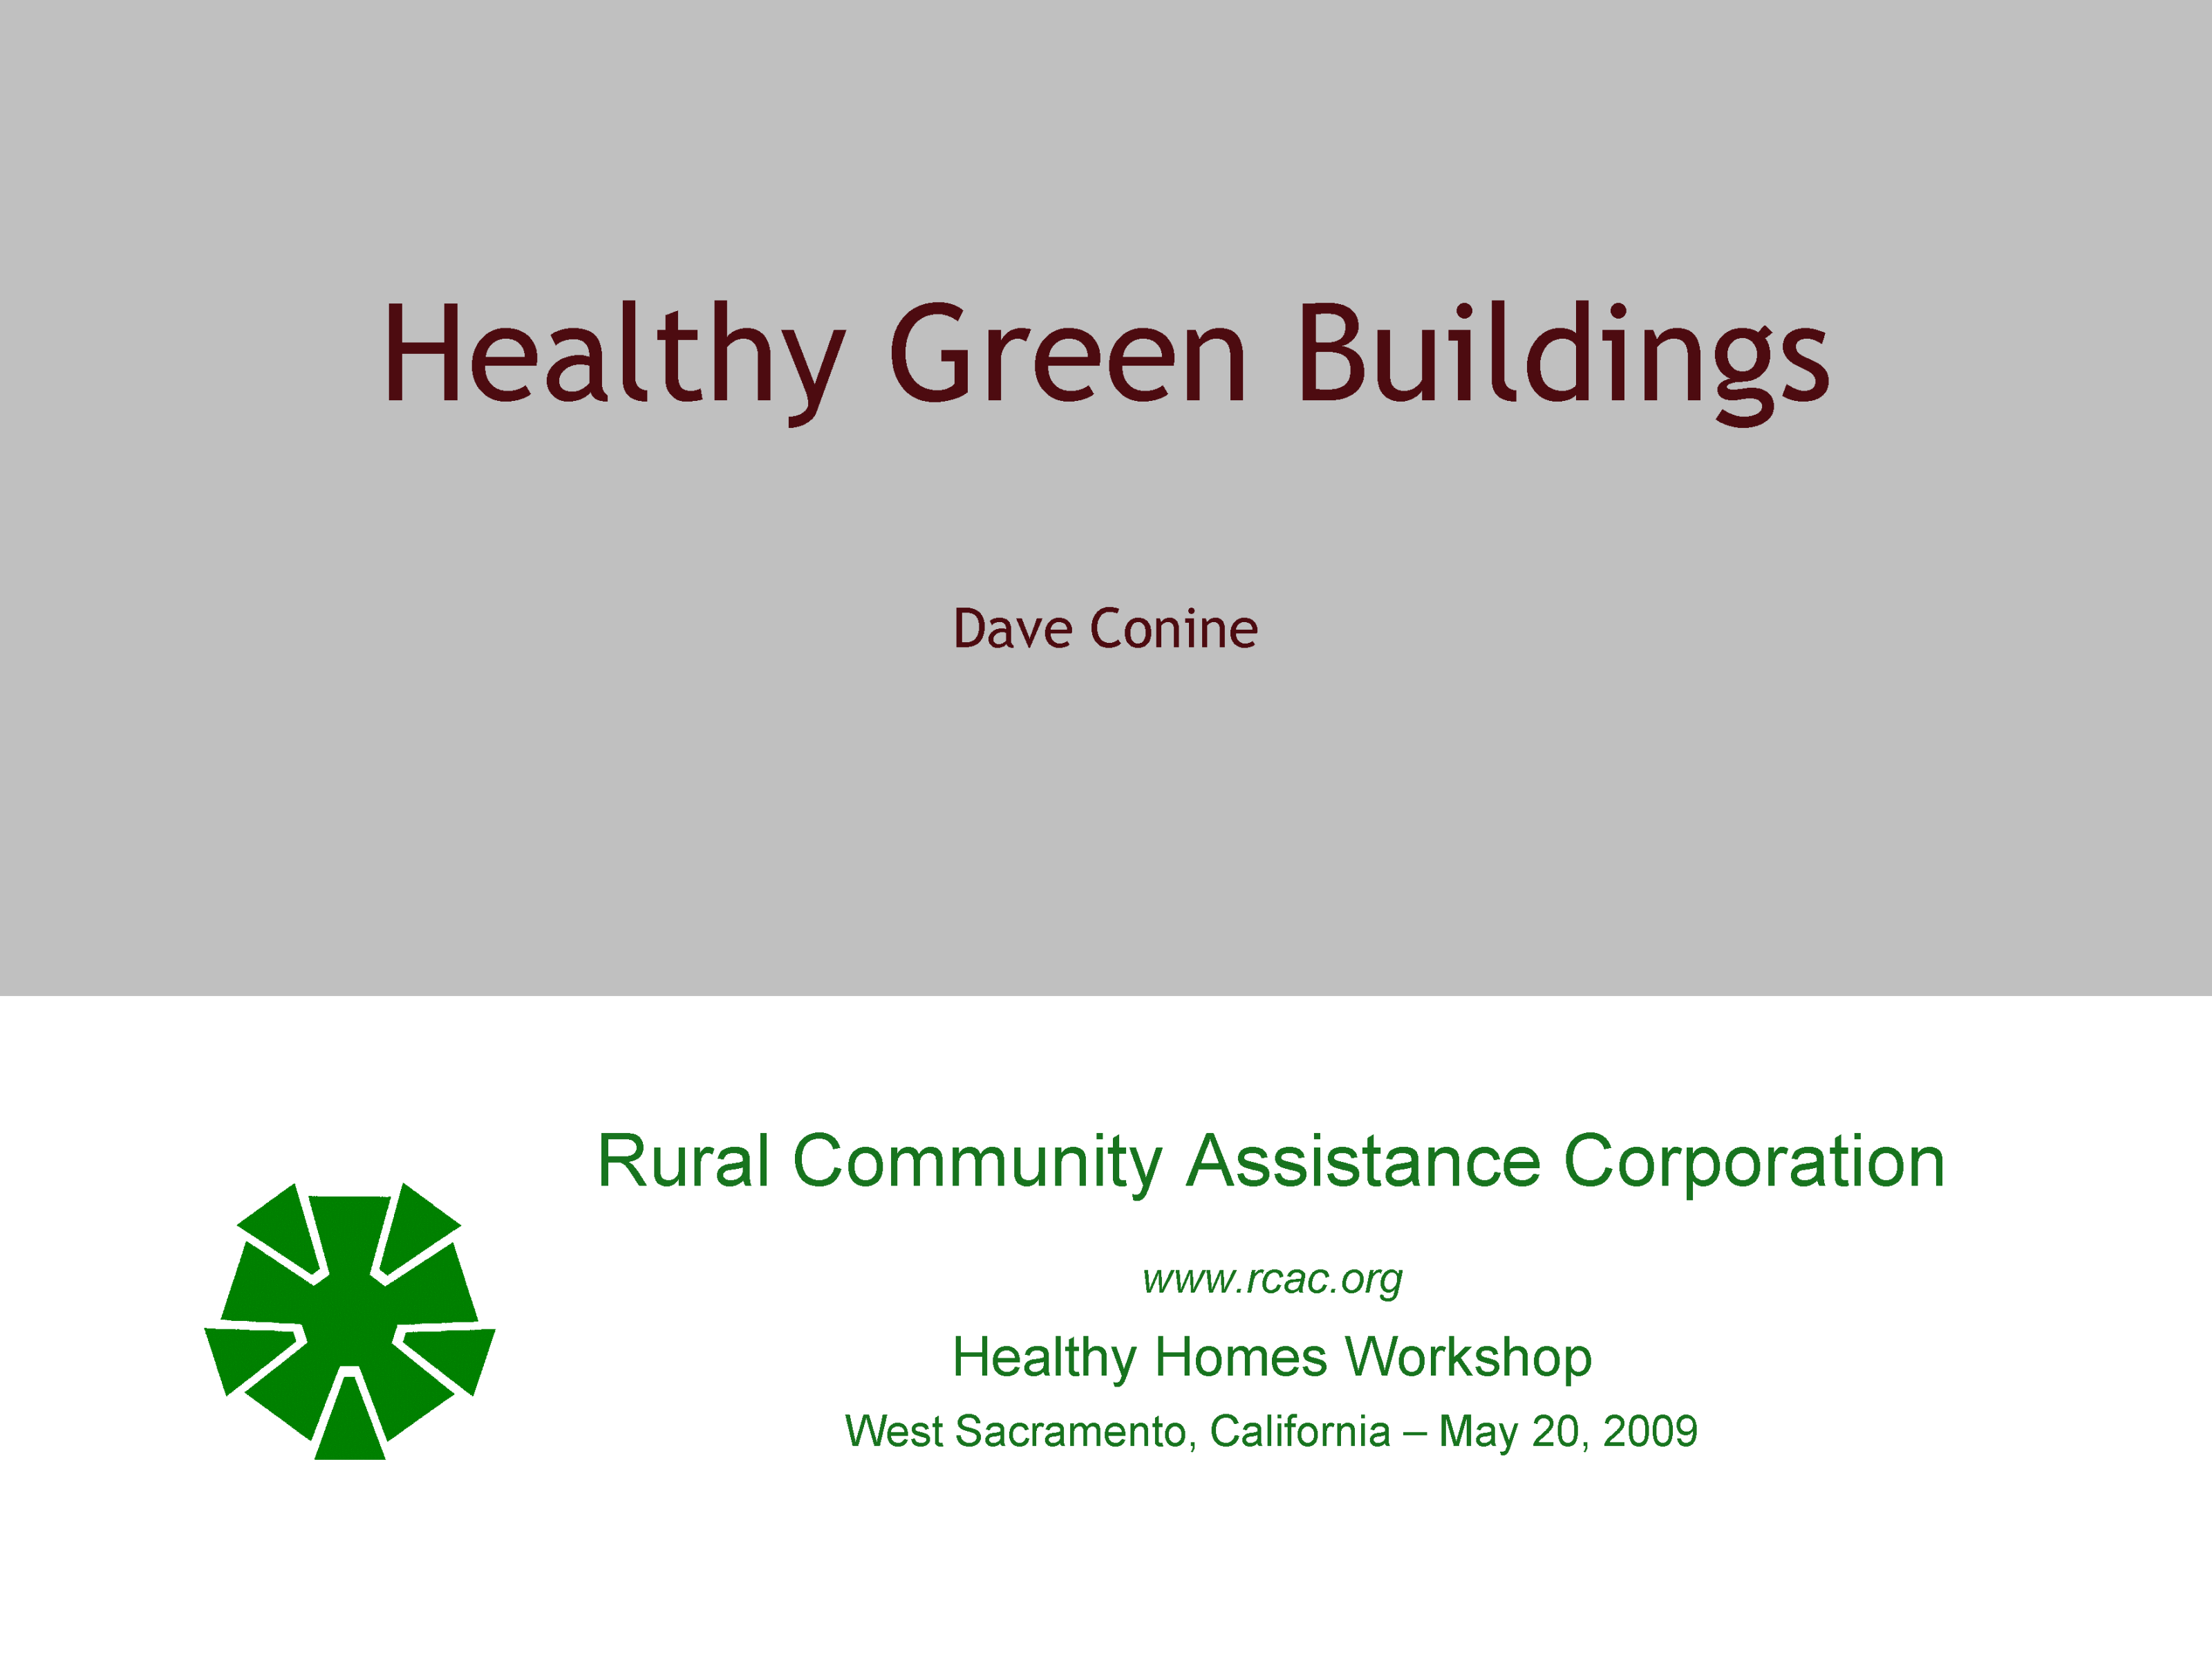 Presentation: Healthy Green Buildings